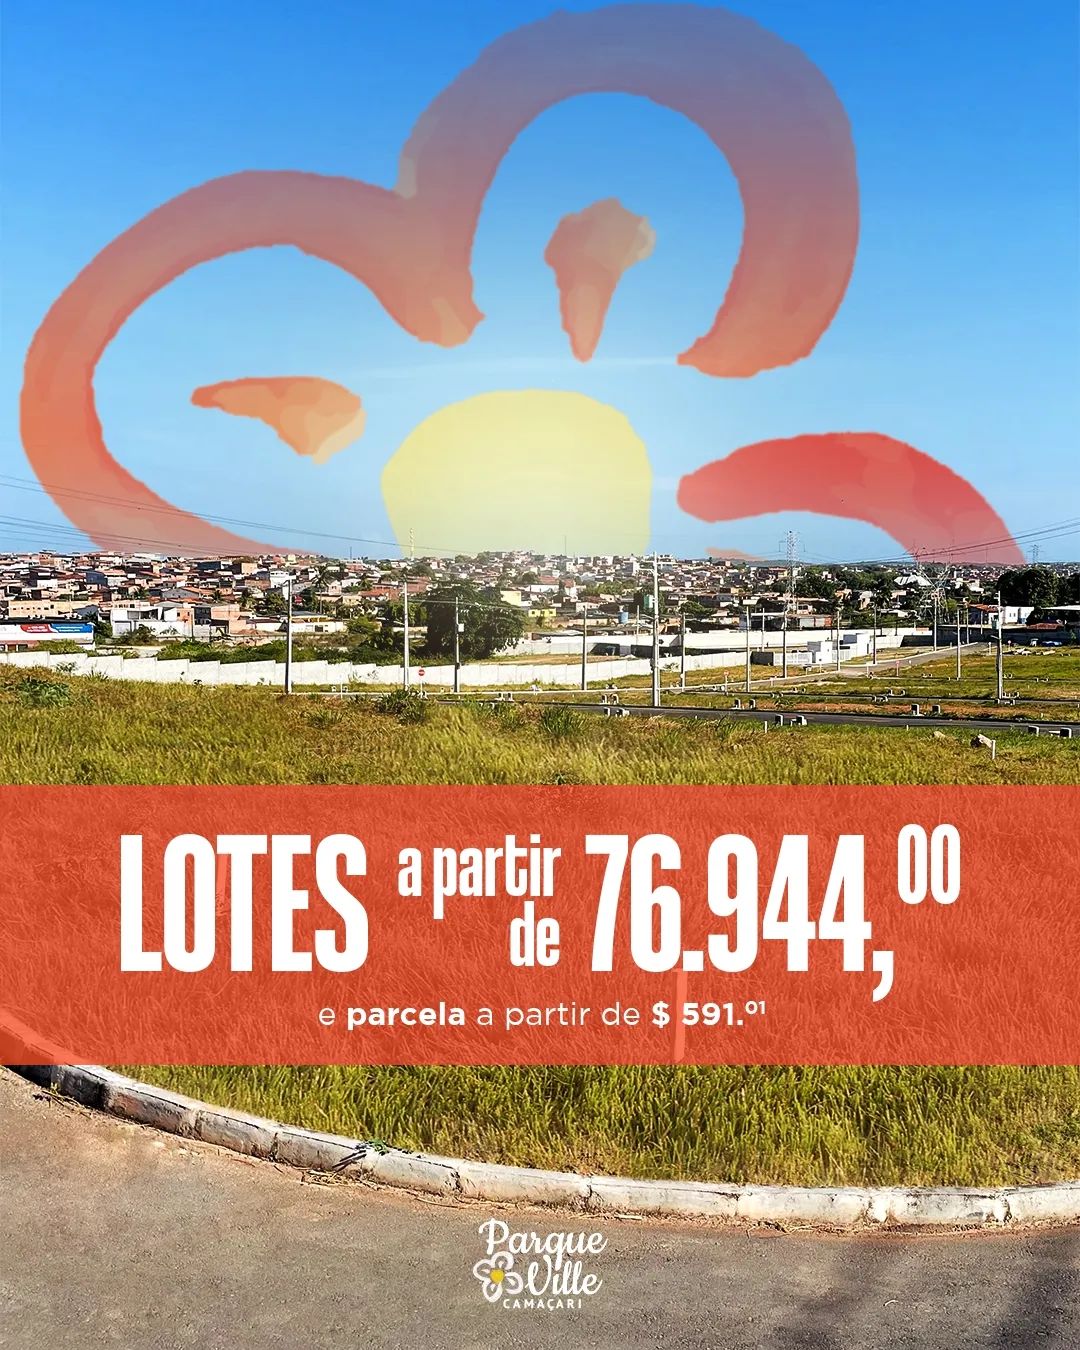 Loteamento 100% fechado, com lotes a partir de 160m² e guarita de acesso controlado Rua Octávio Magabeira  Camaçari - 